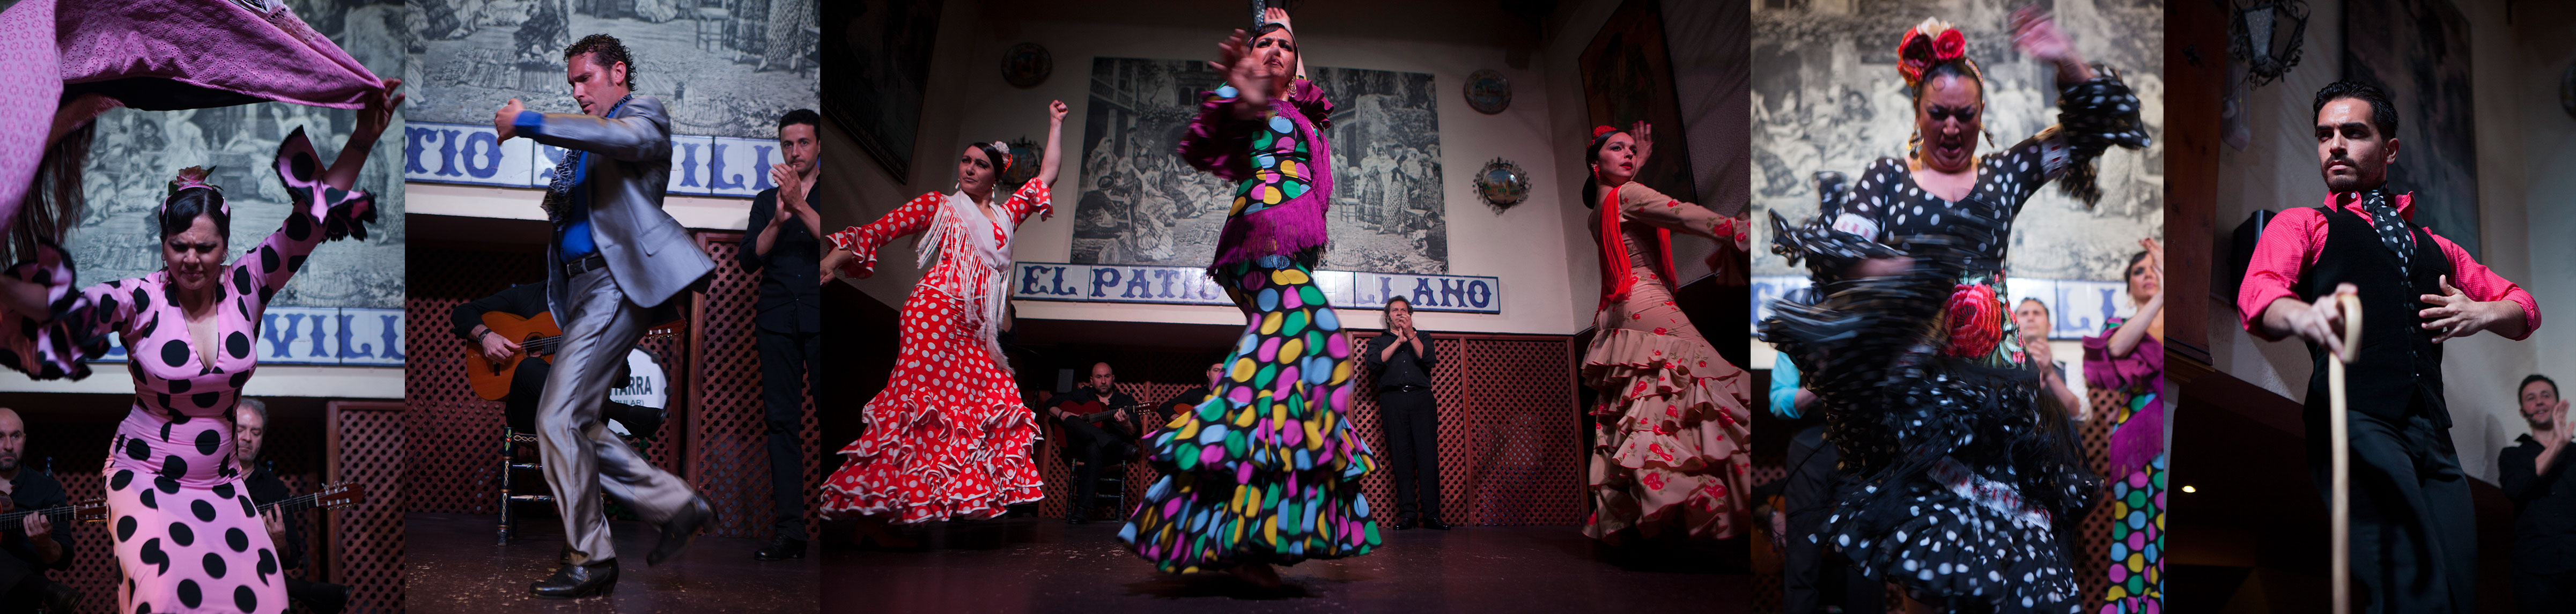 tablao flamenco sevilla